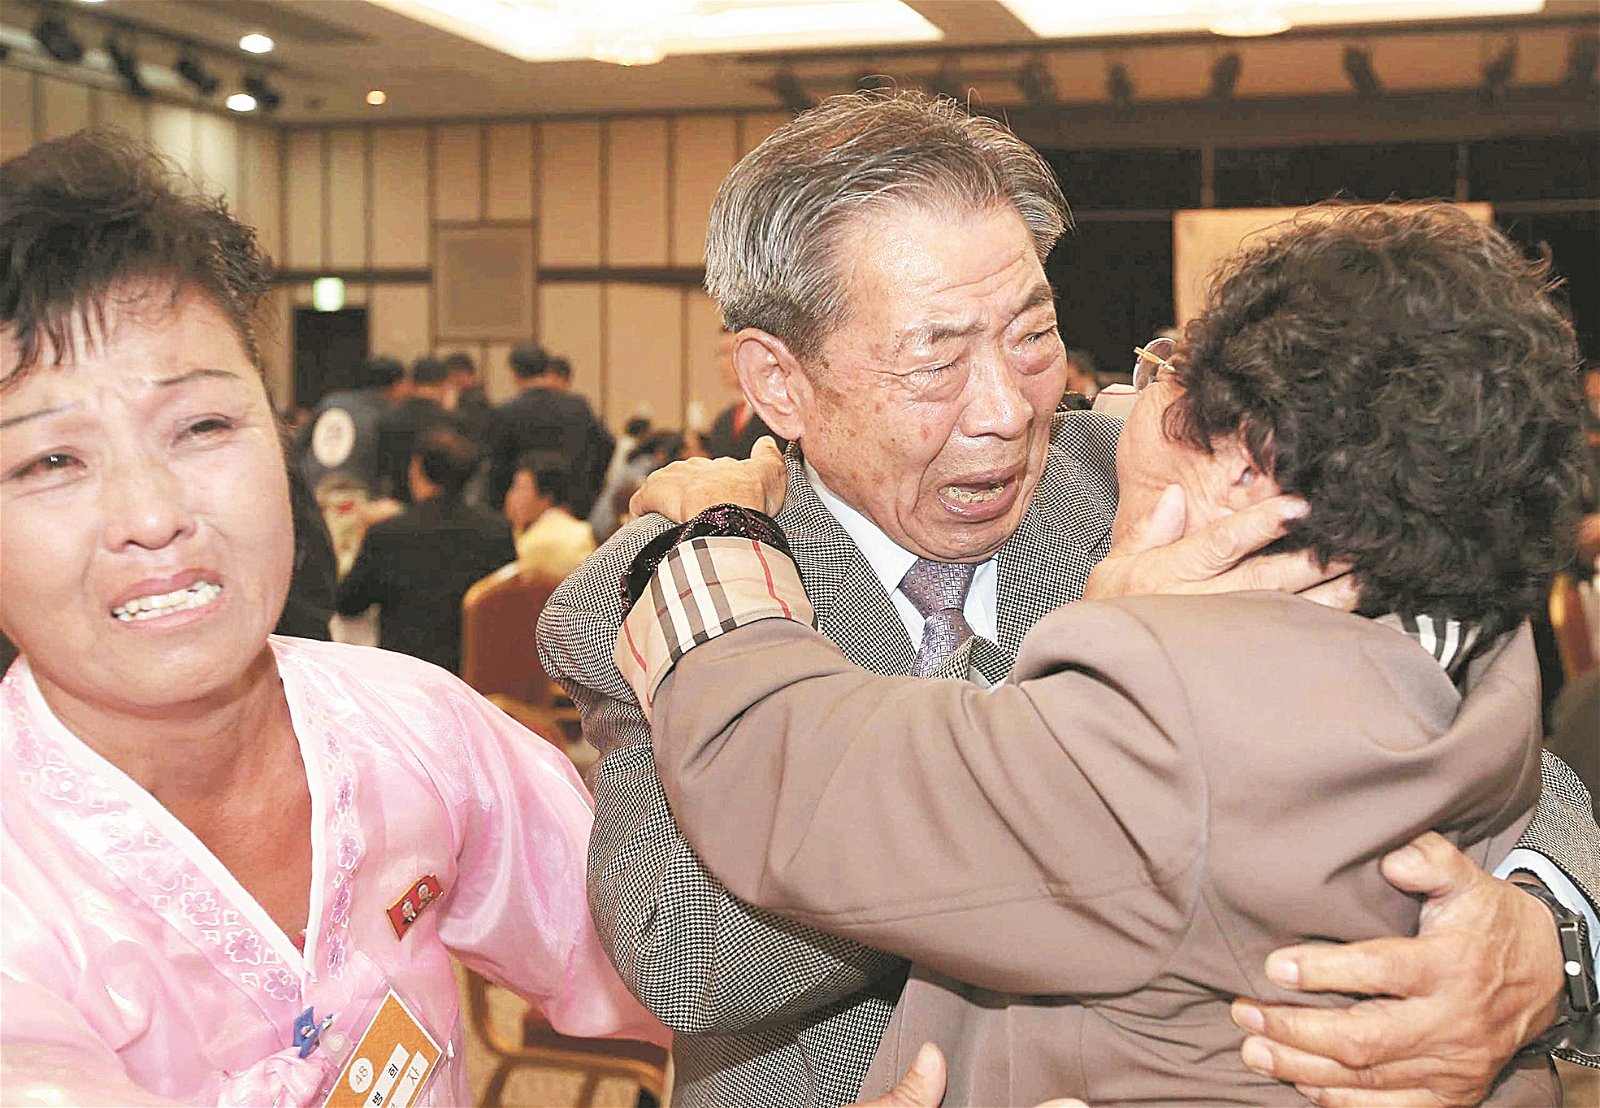 2015年10月20日在朝鲜金刚山举行第20次韩朝离散家属团聚活动上，来自韩国的84岁闵浩植（中、译音），拥抱居住在朝鲜的亲人闵安锡（译音），激动万分，泪流满脸。两人自韩朝分裂之后，超过60年来首次见面。